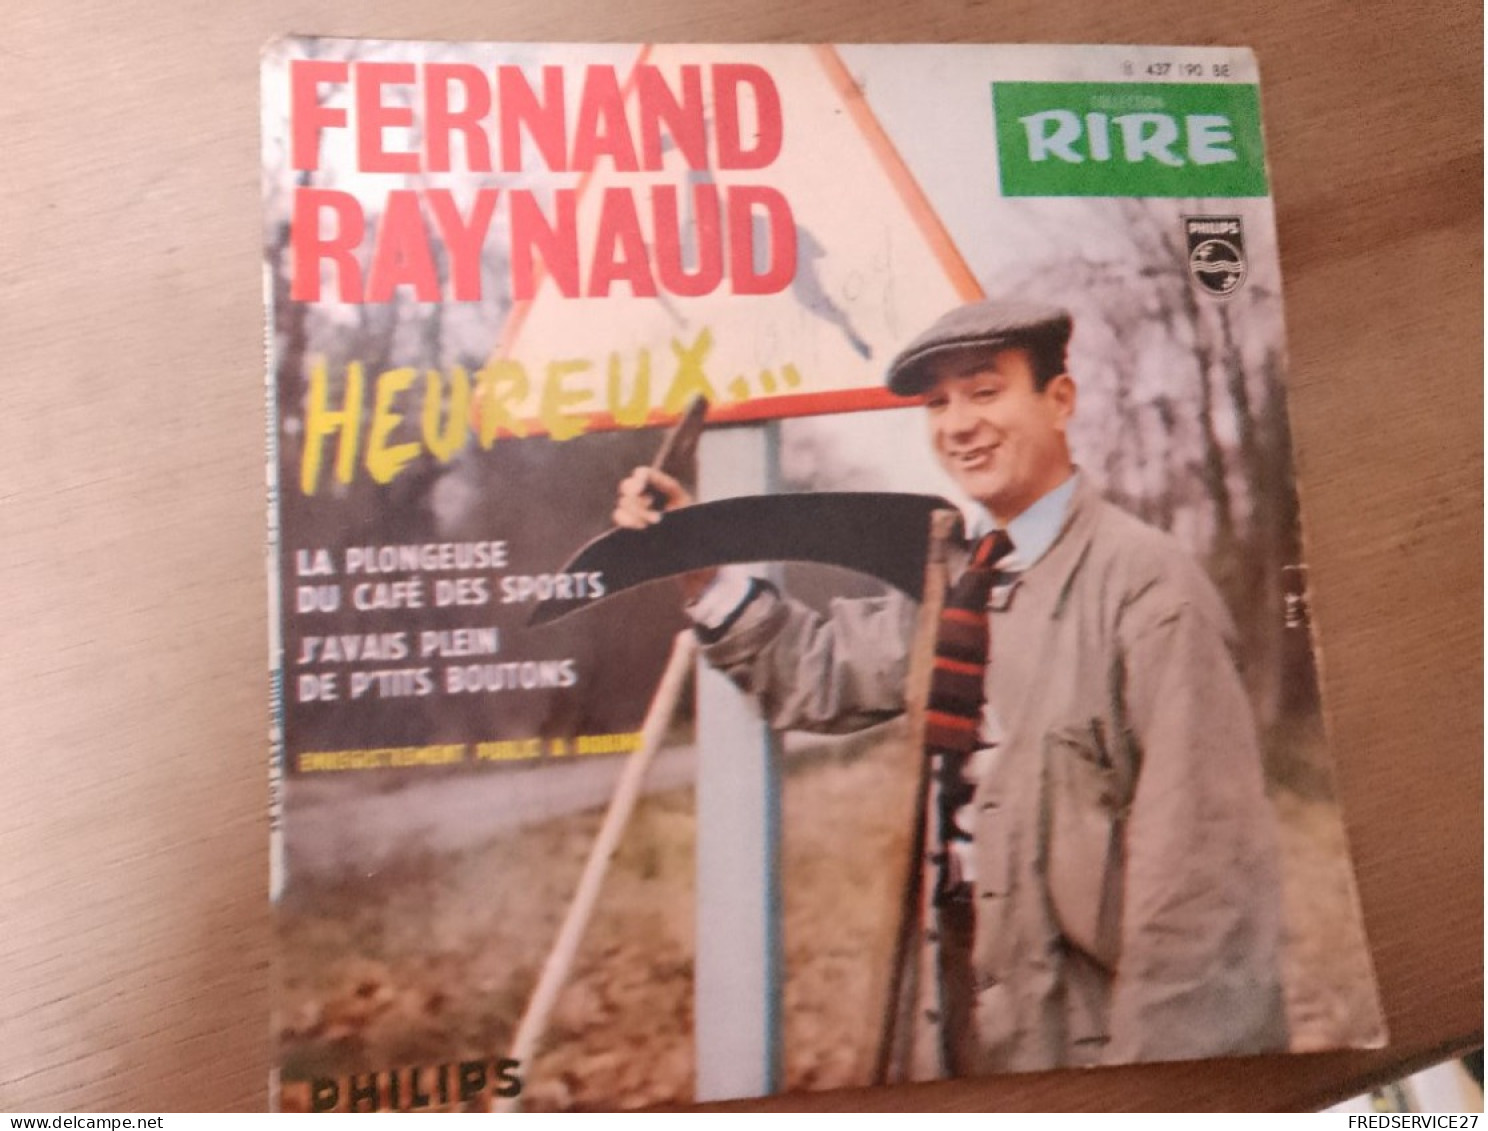 107 //  FERNAND RAYNAUD / HEUREUX ... / LA PLONGEUSE DU CAFE DES SPORTS - Humor, Cabaret